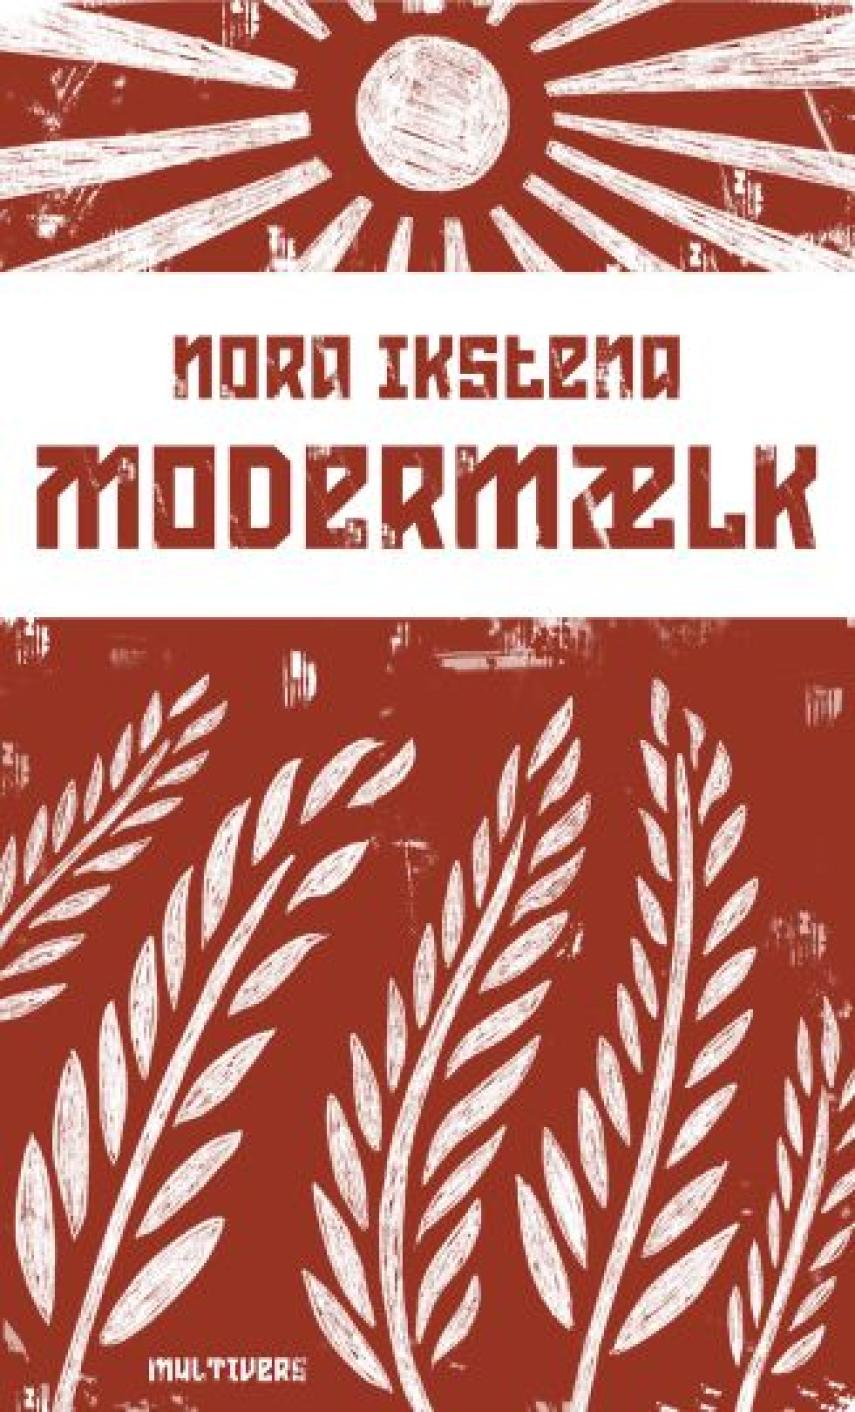 Nora Ikstena: Modermælk